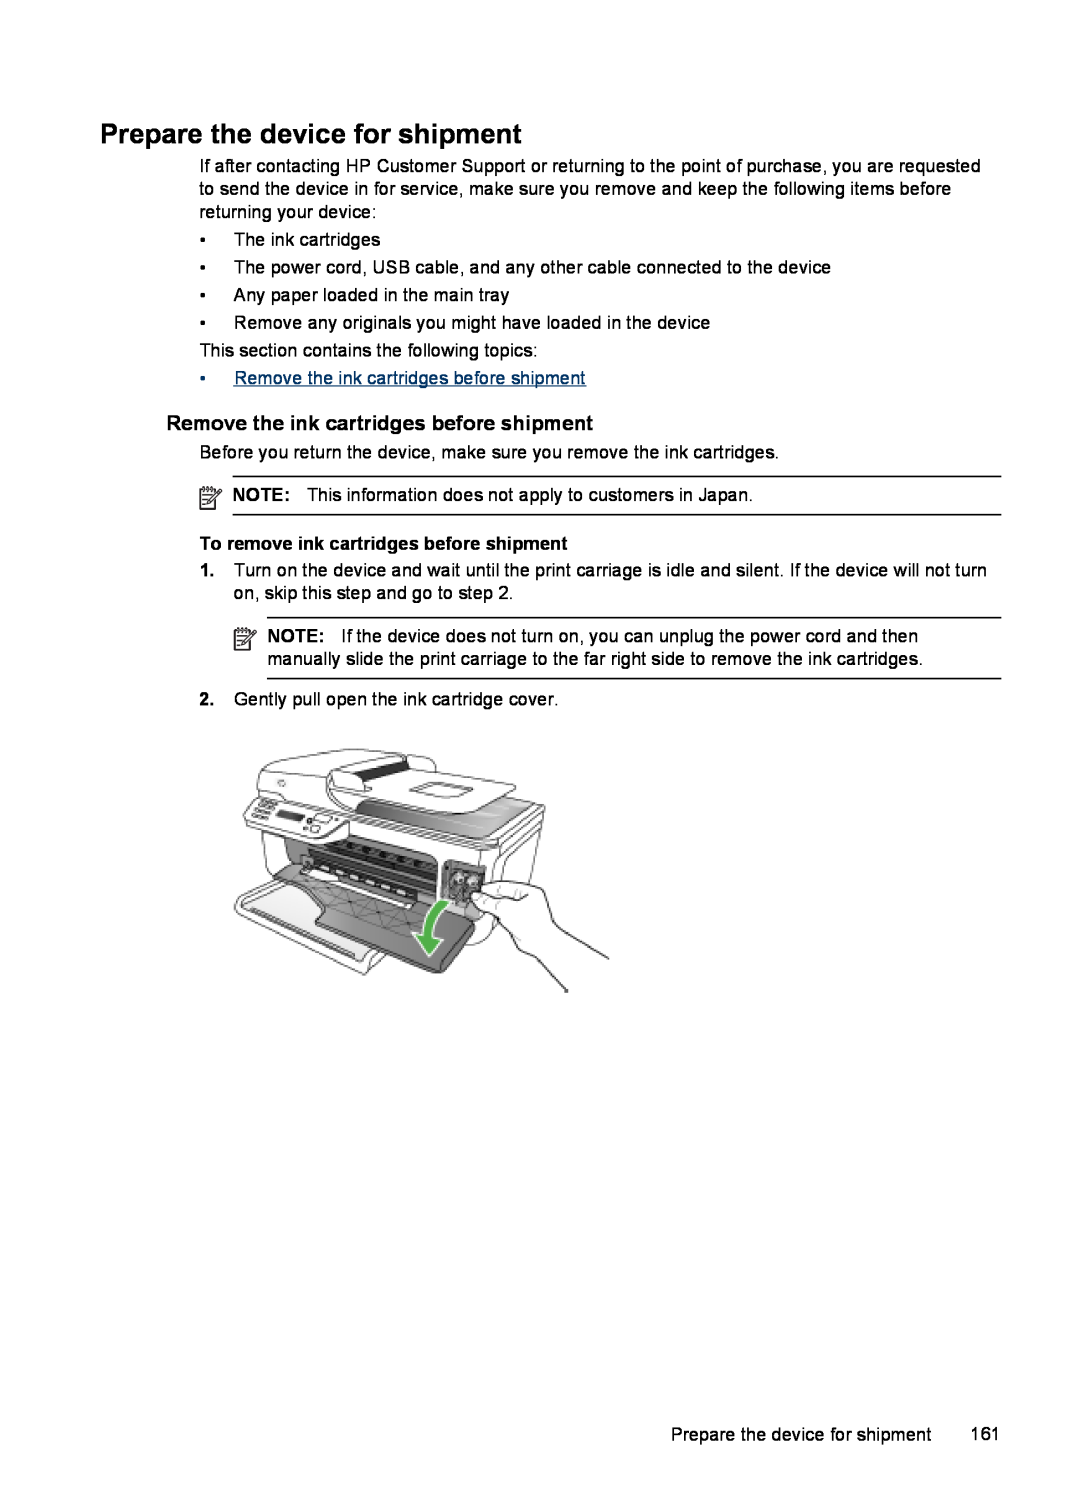 HP J4680, J4660, J4580, J4540, J4550 manual Prepare the device for shipment, Remove the ink cartridges before shipment 